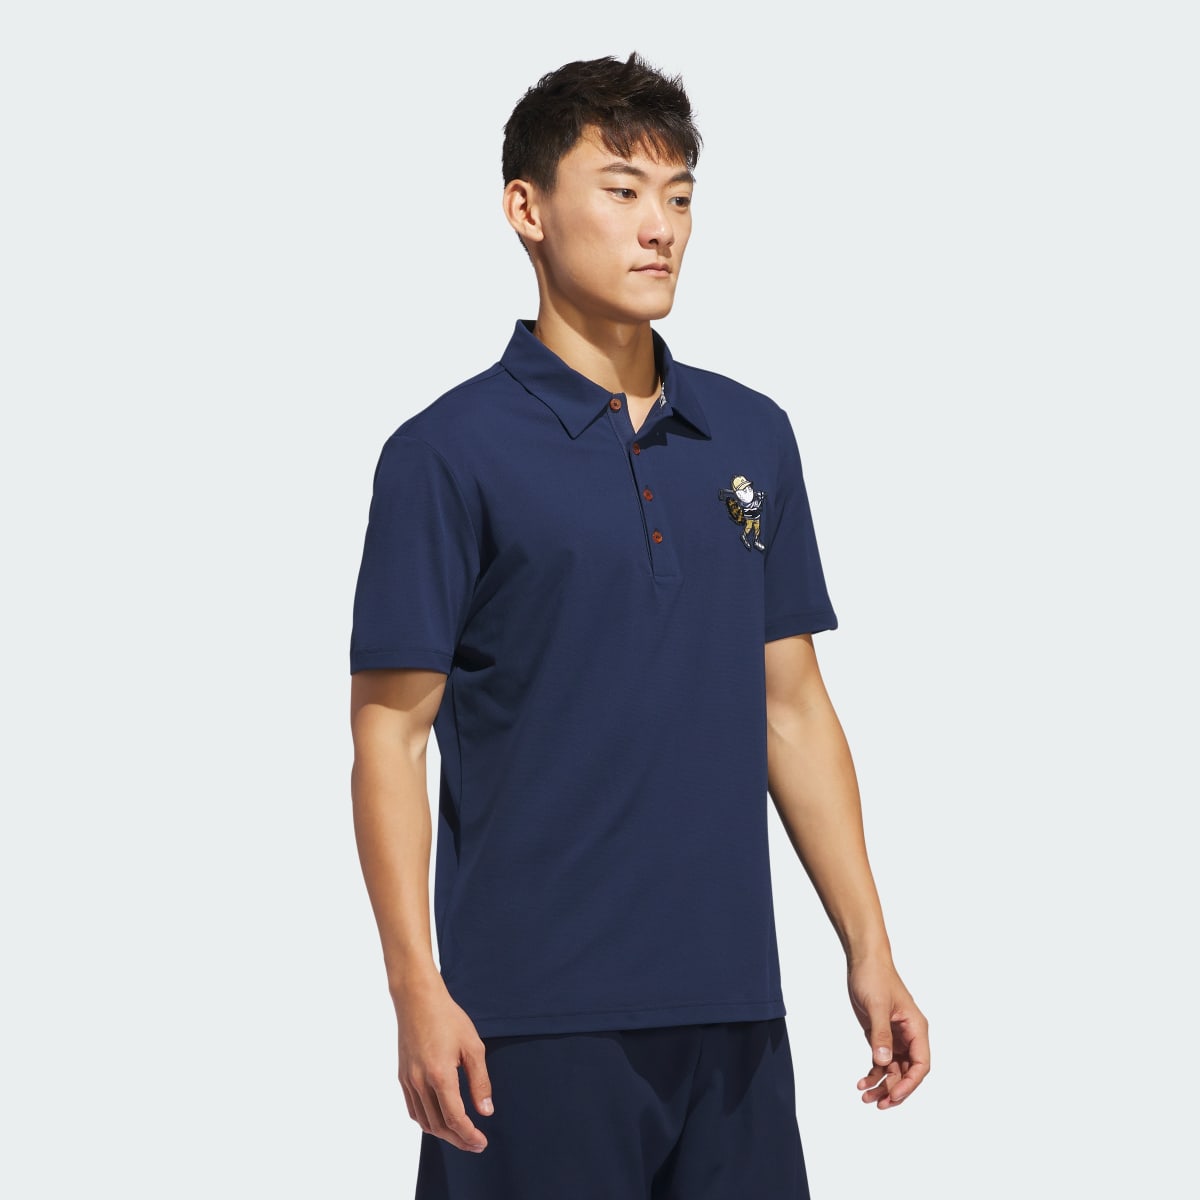 Adidas Koszulka Malbon Polo. 6